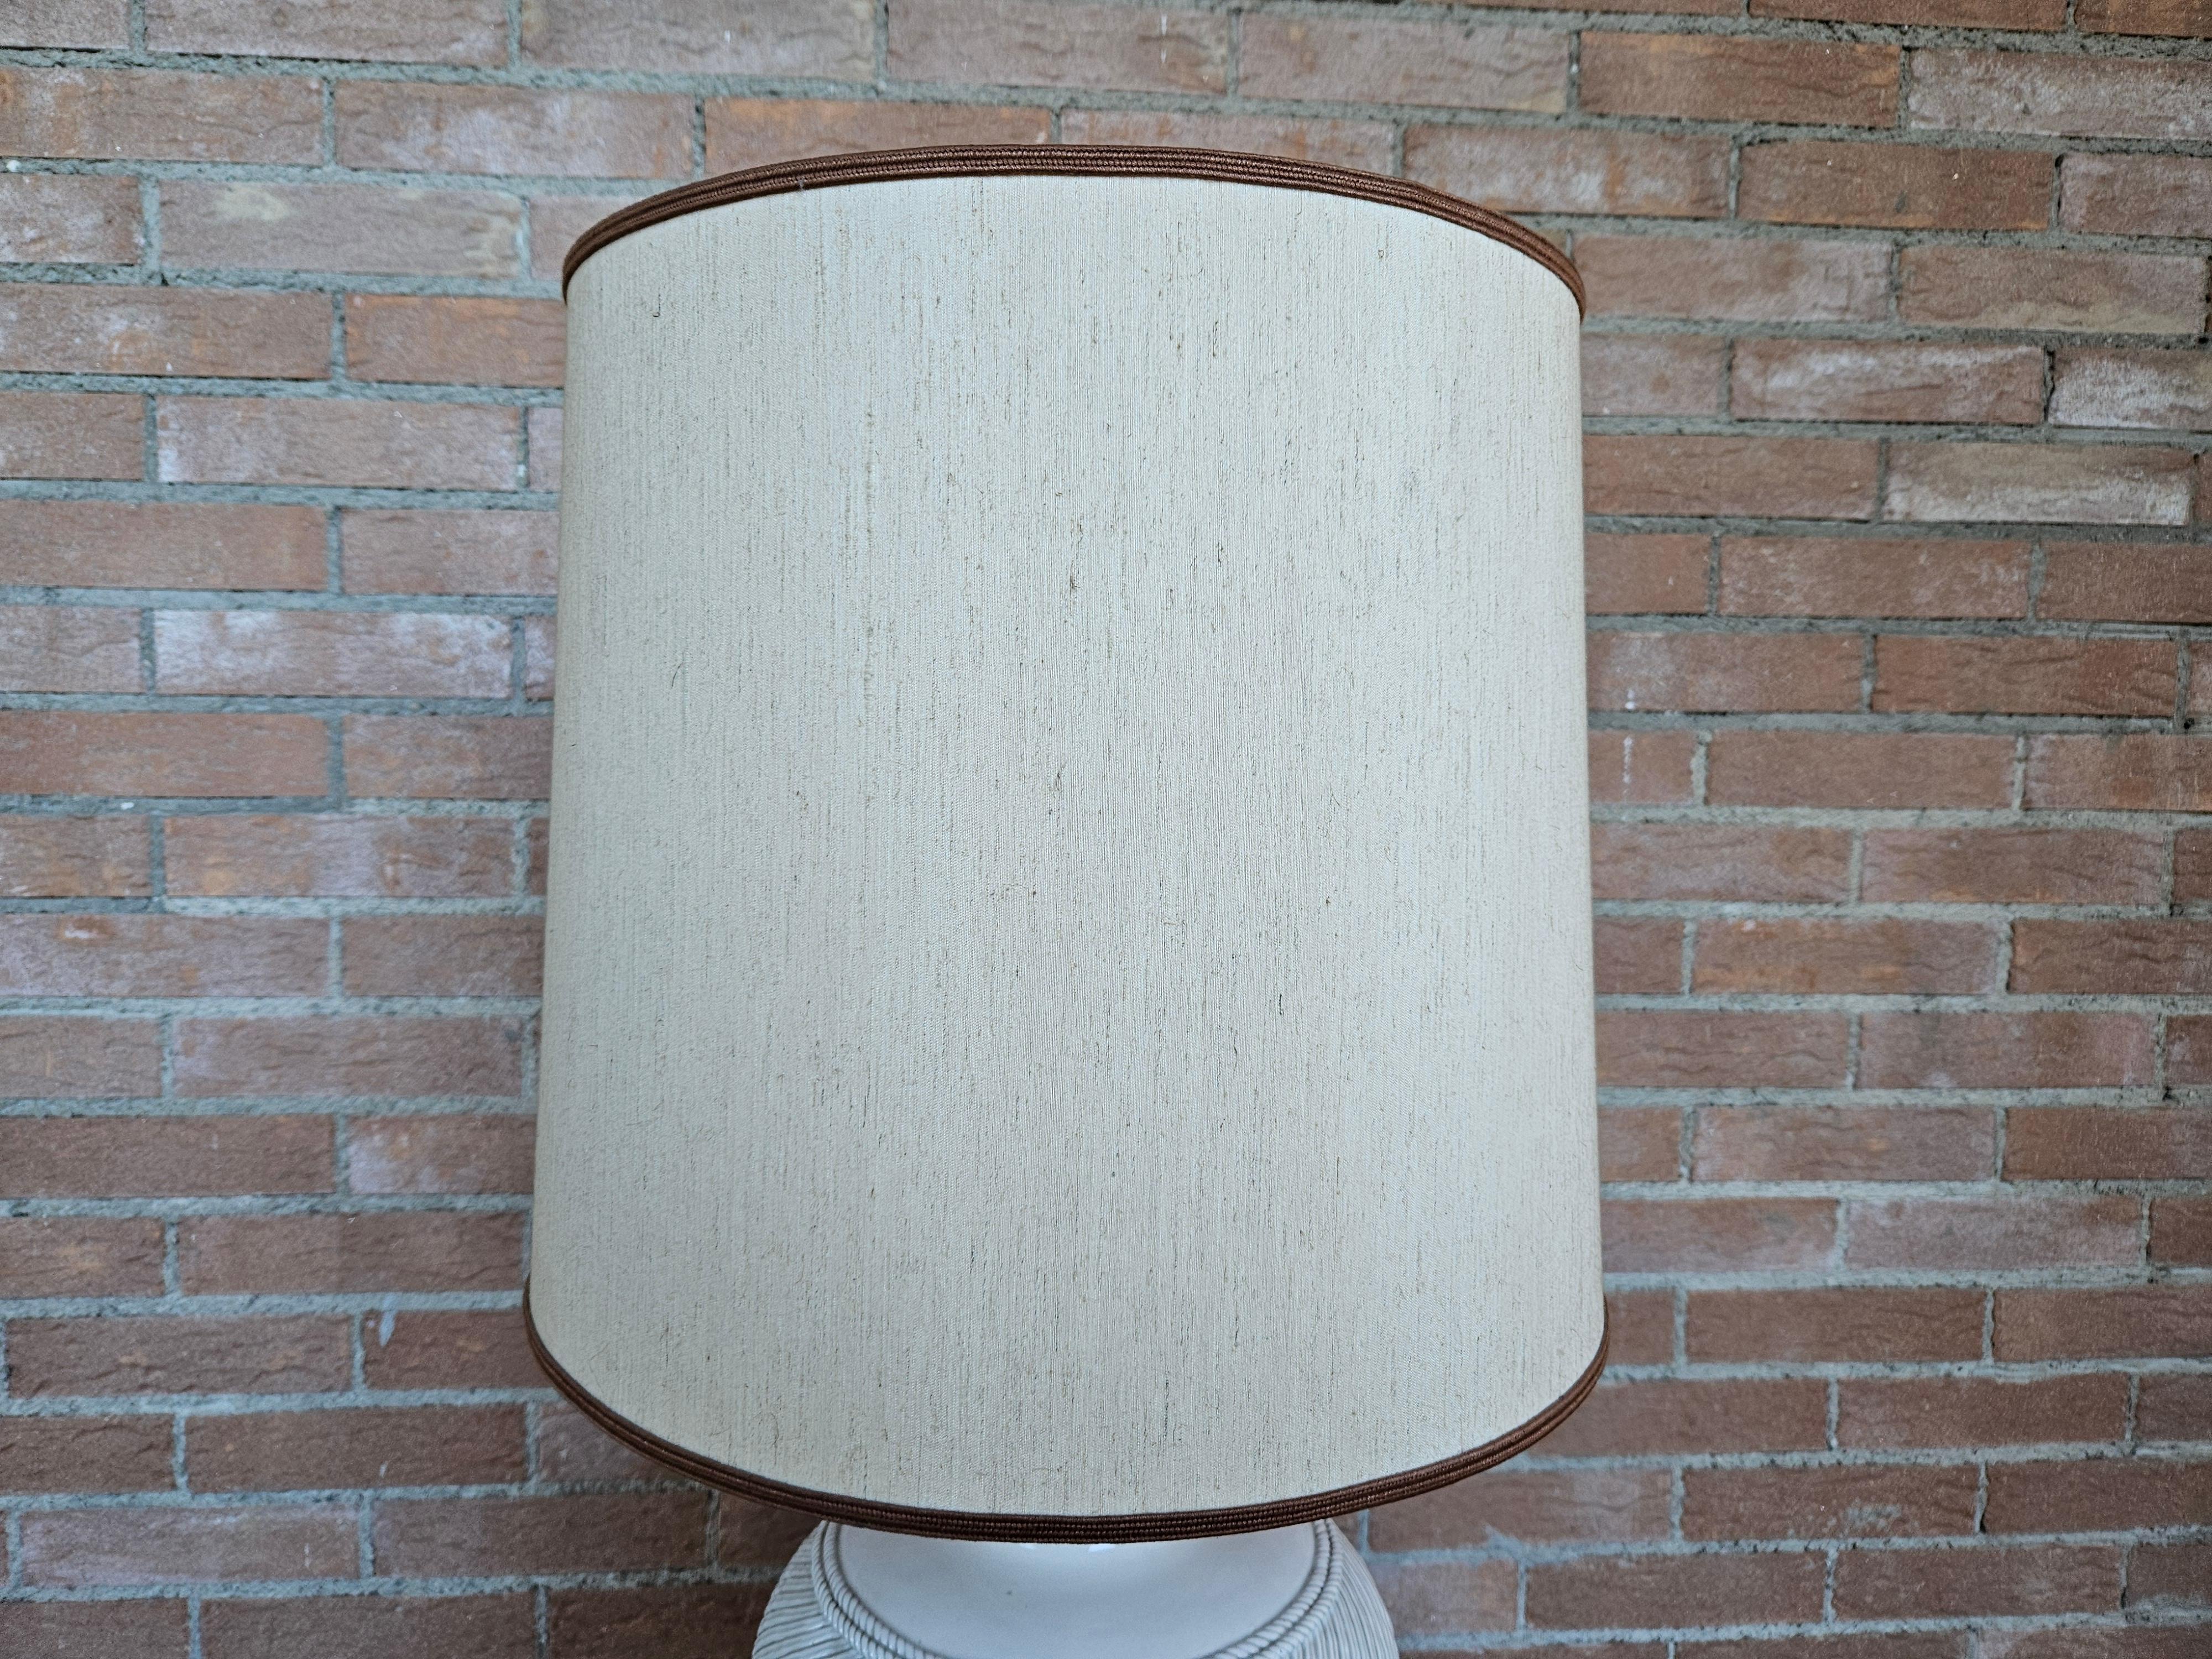 Lampe de table en céramique blanche avec abat-jour en tissu.

Élément de mobilier au design moderne, production italienne des années 1970.

Ampoule non incluse.
